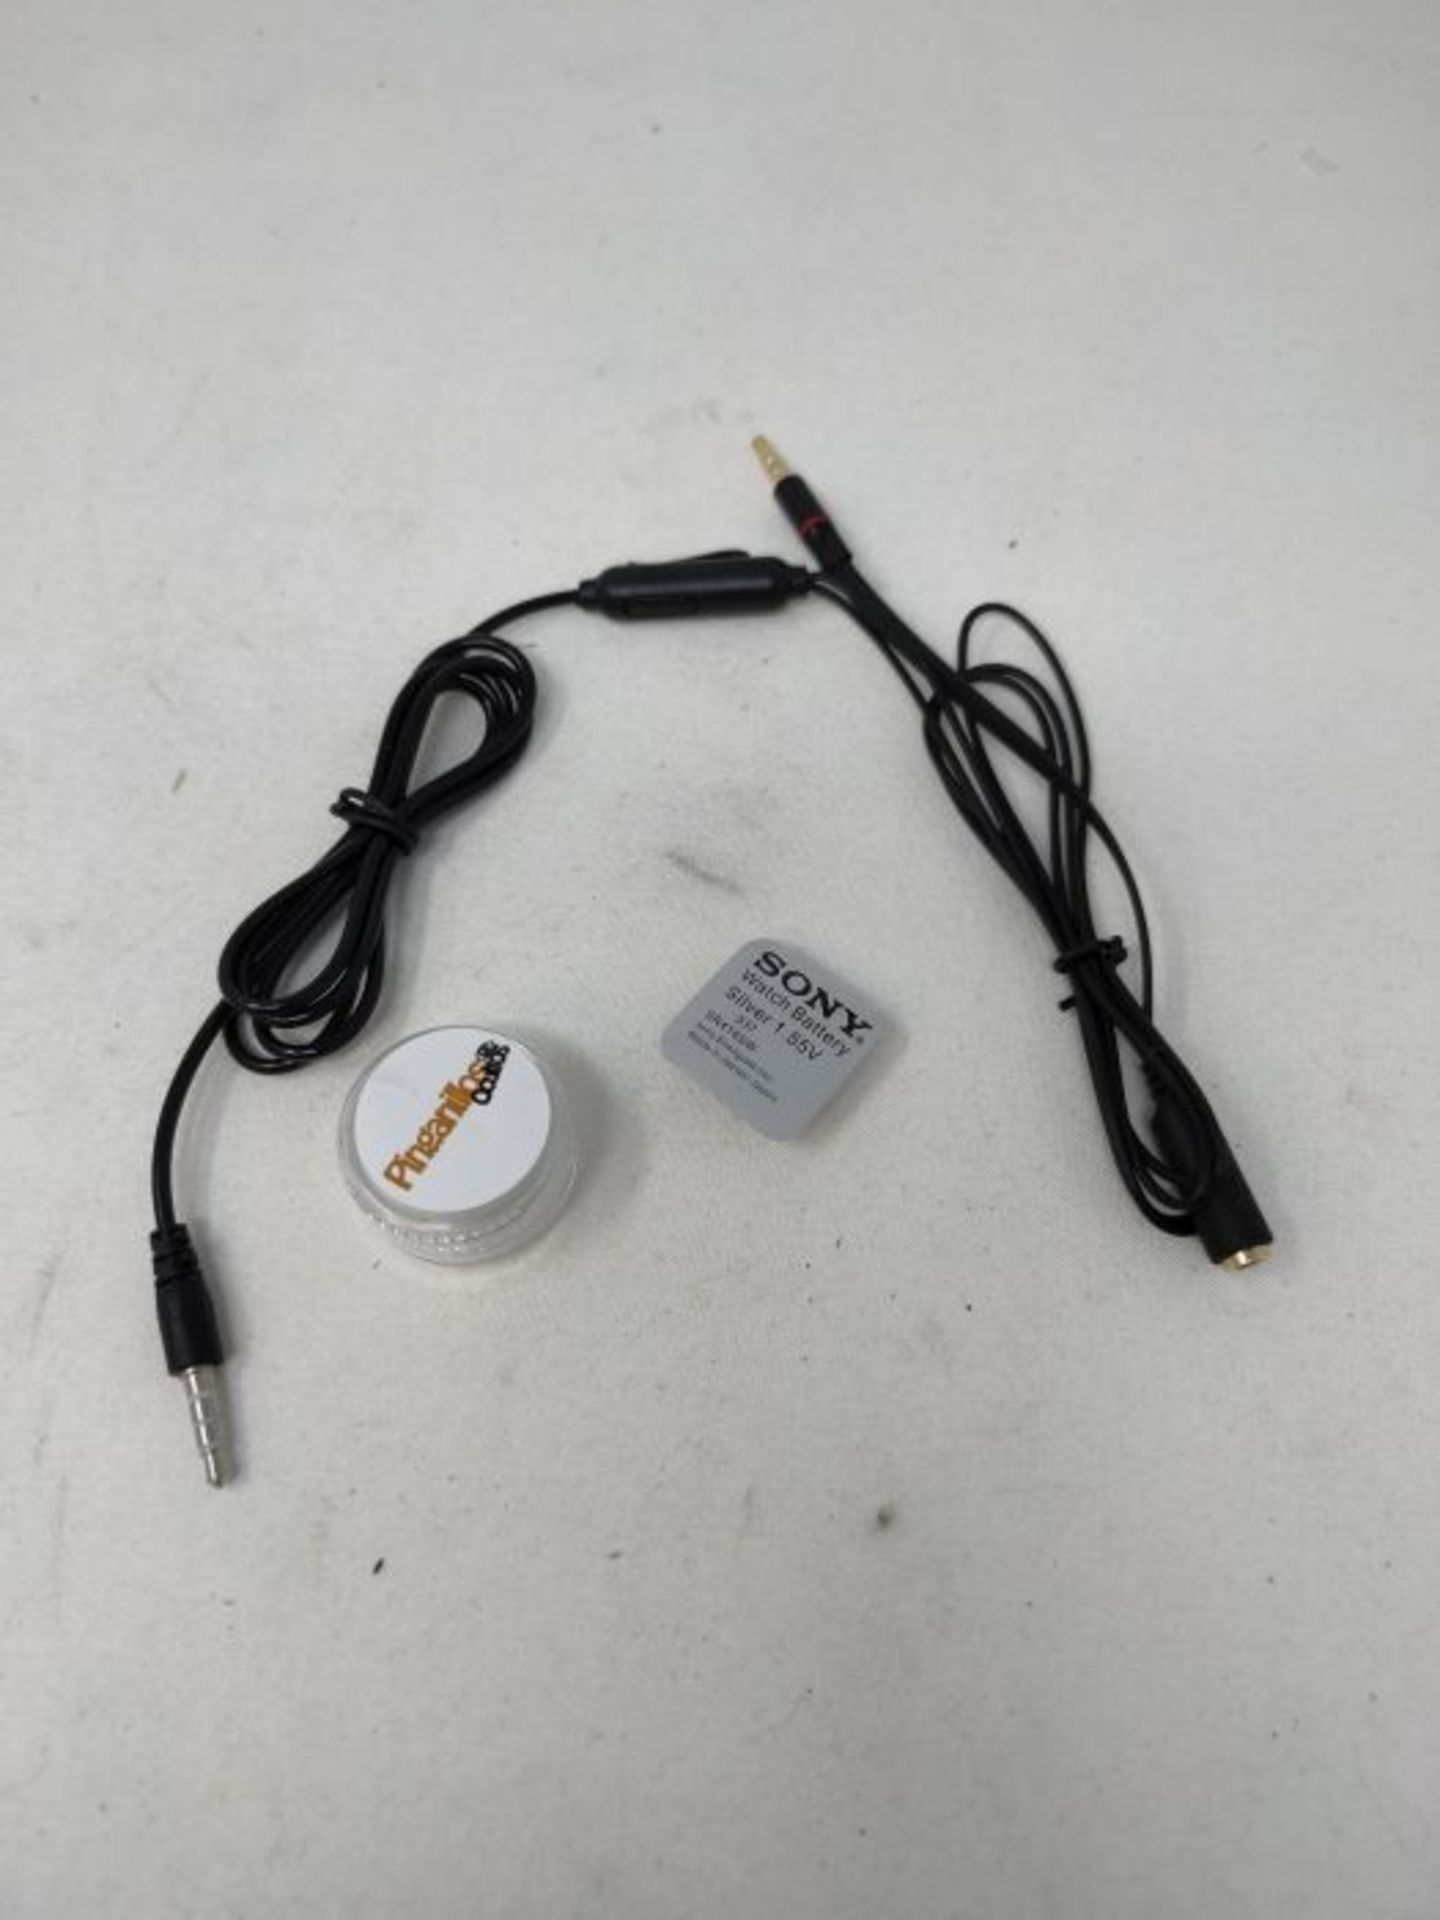 Vip Pro Combo Kit - Cuffie intrauricolari con cavo per collo, non visibili